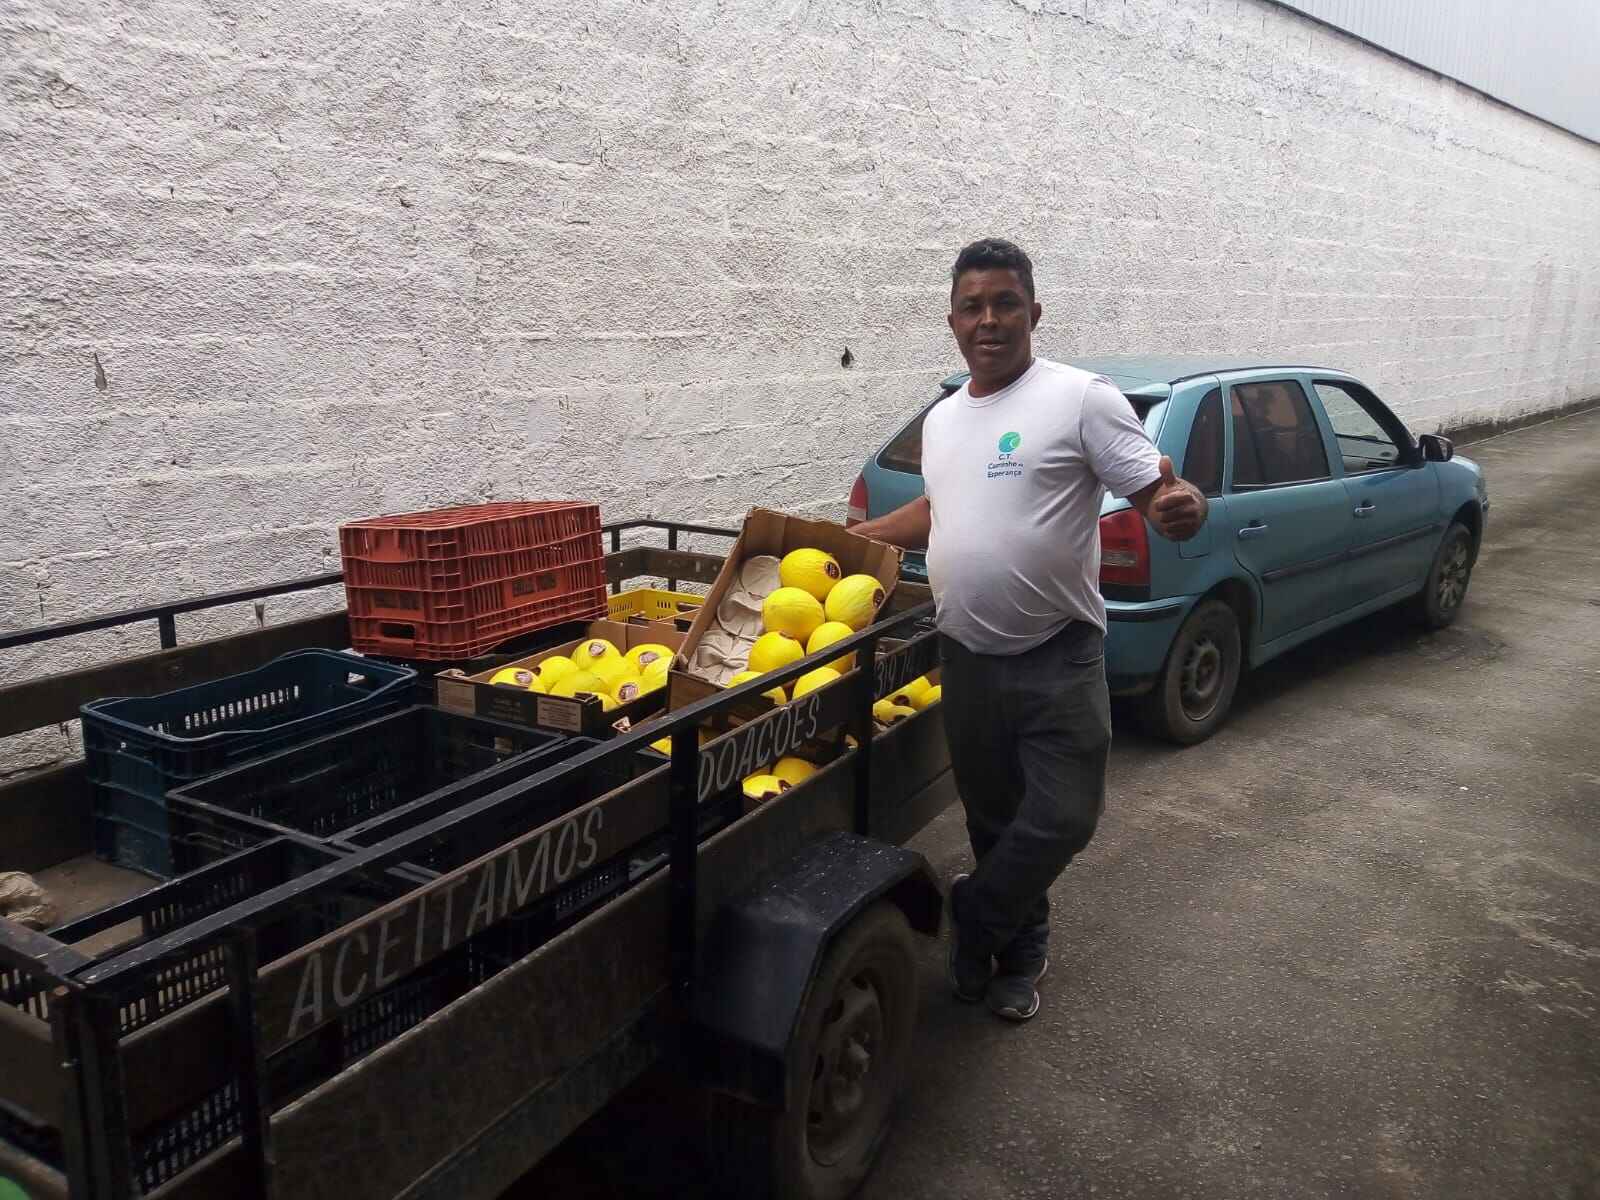 Banco de Alimentos de Caraguatatuba repassa doação de 1,5 tonelada de melão para entidades